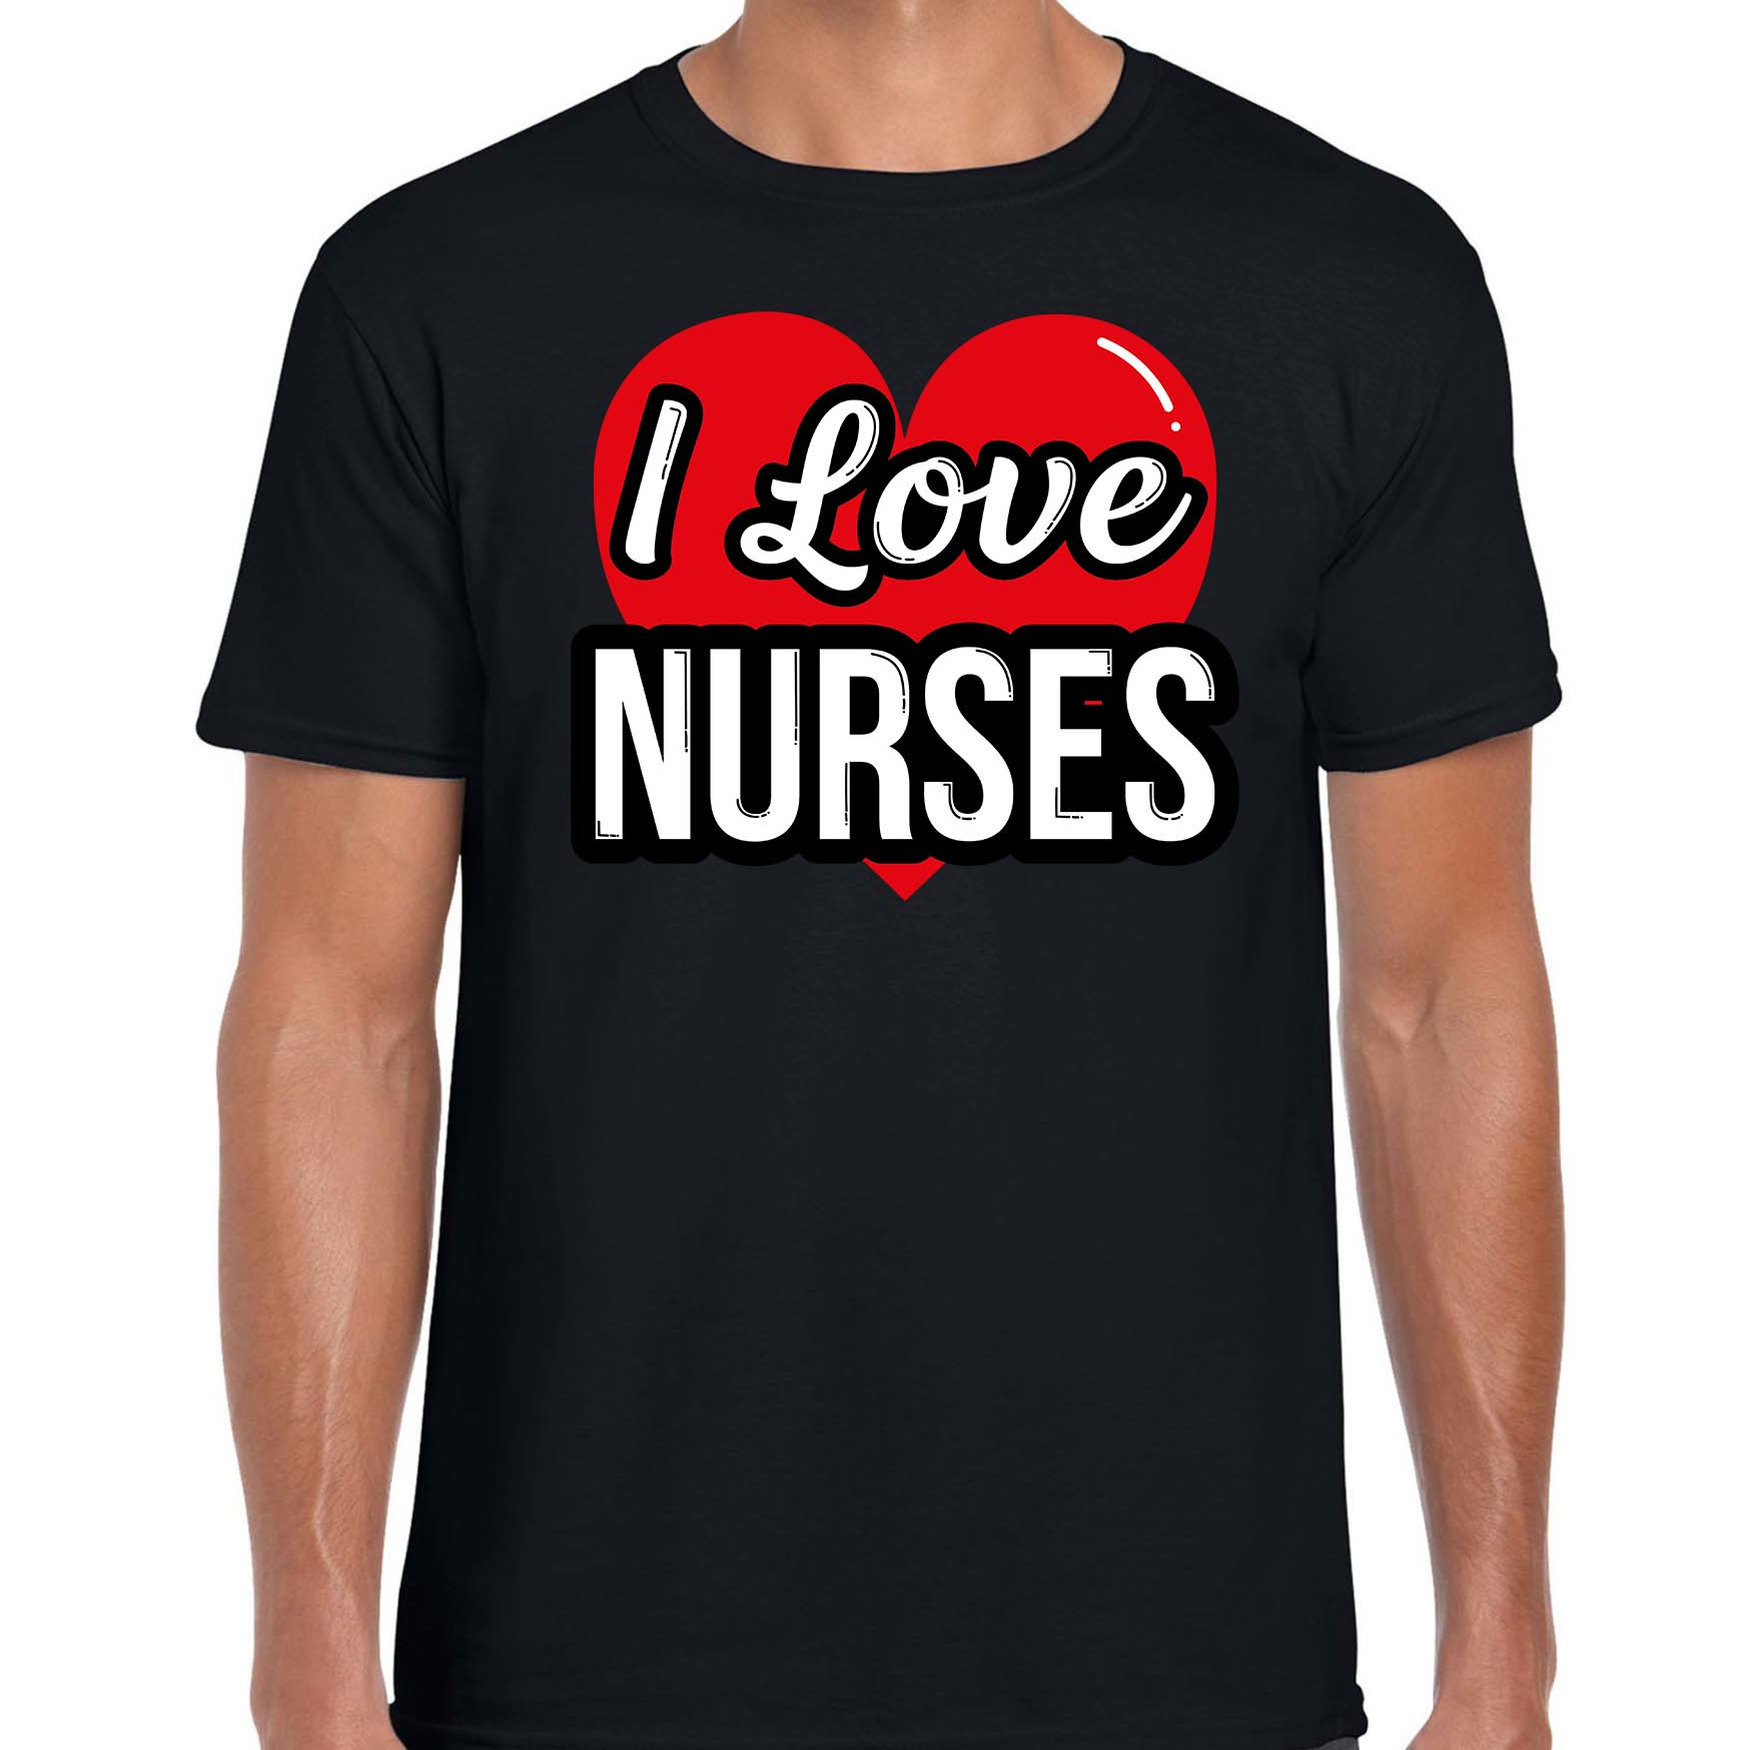 I love nurses - zusters verkleed t-shirt zwart voor heren - Outfit verkleed feest